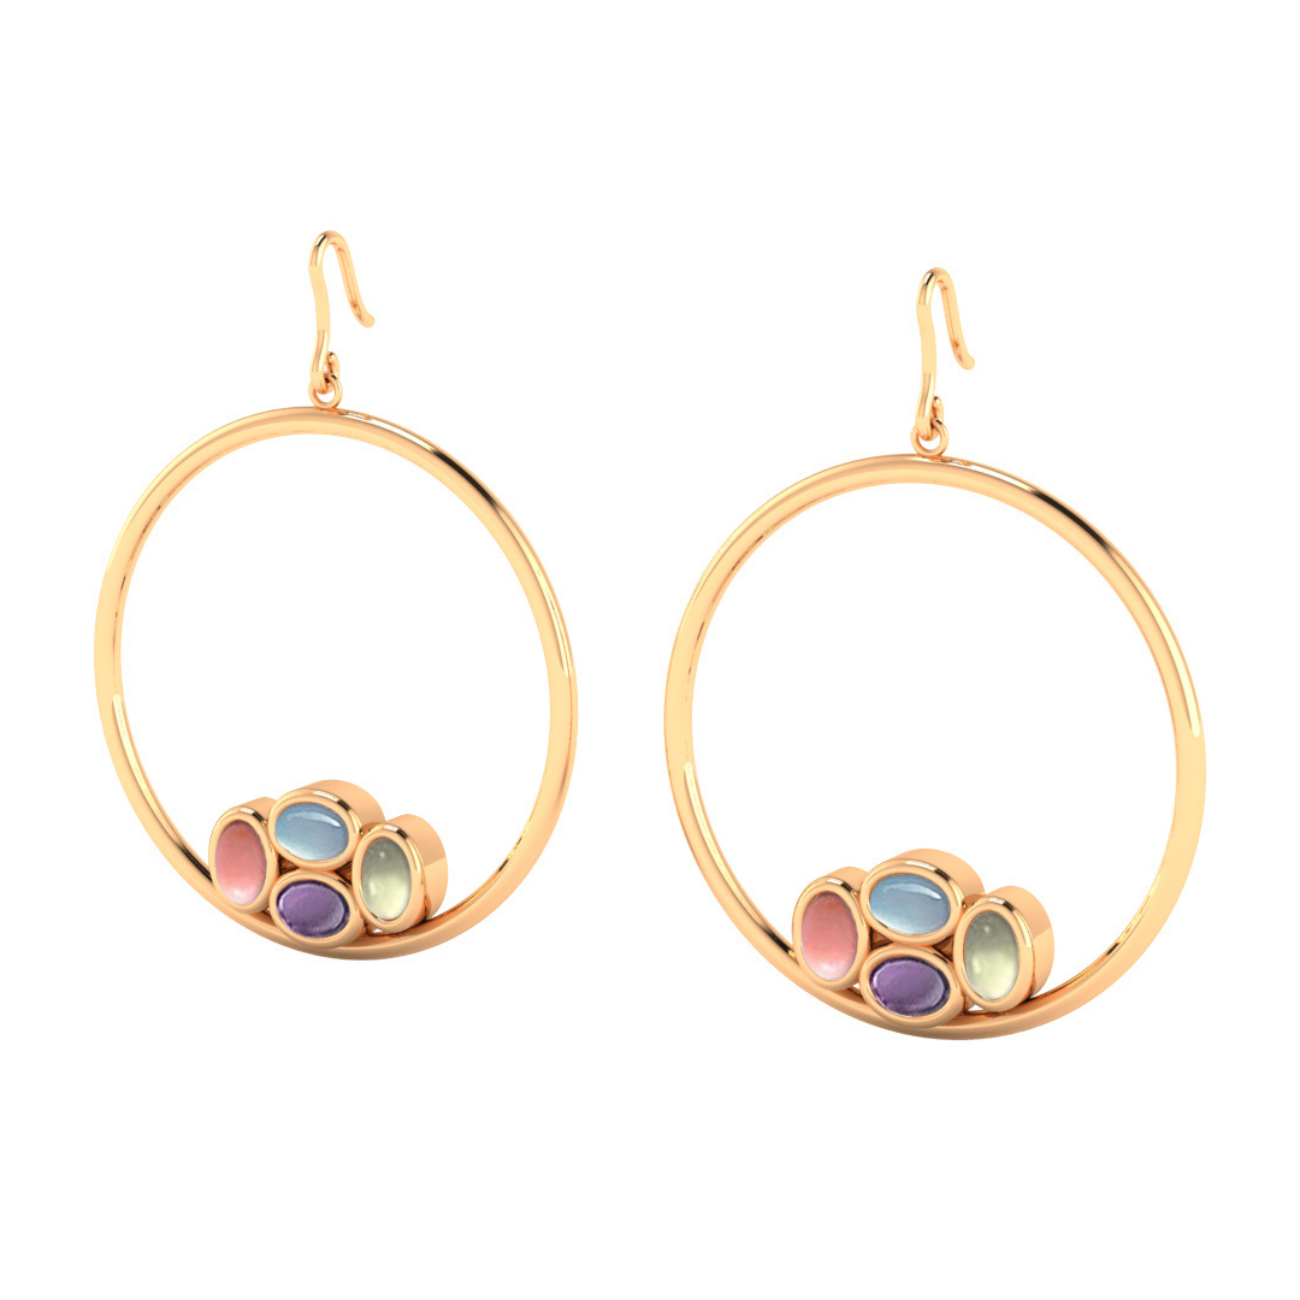 Bauble hoop earrings 18k gold